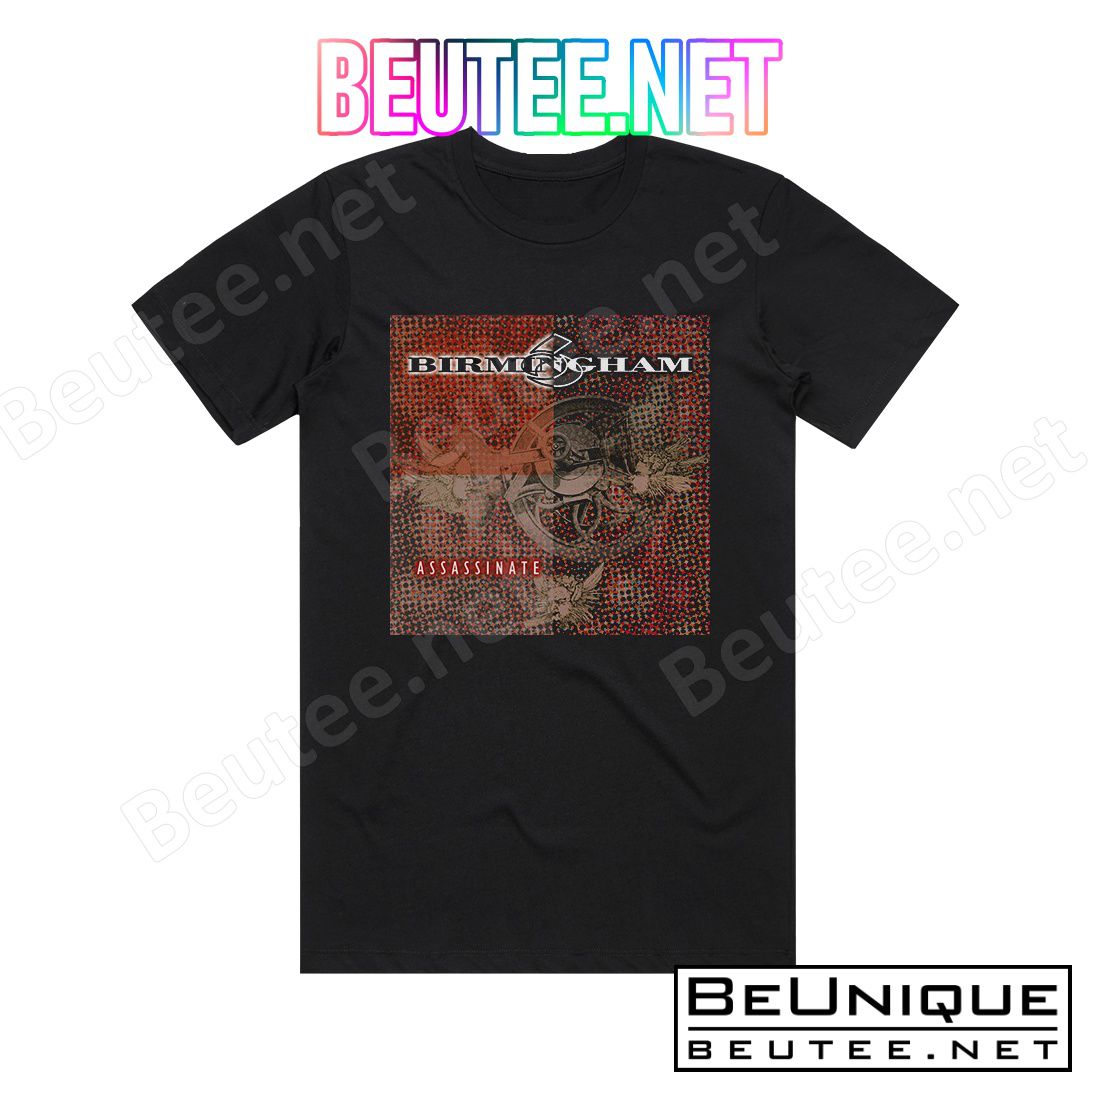 Birmingham 6 Assassinate Album Cover T-Shirt